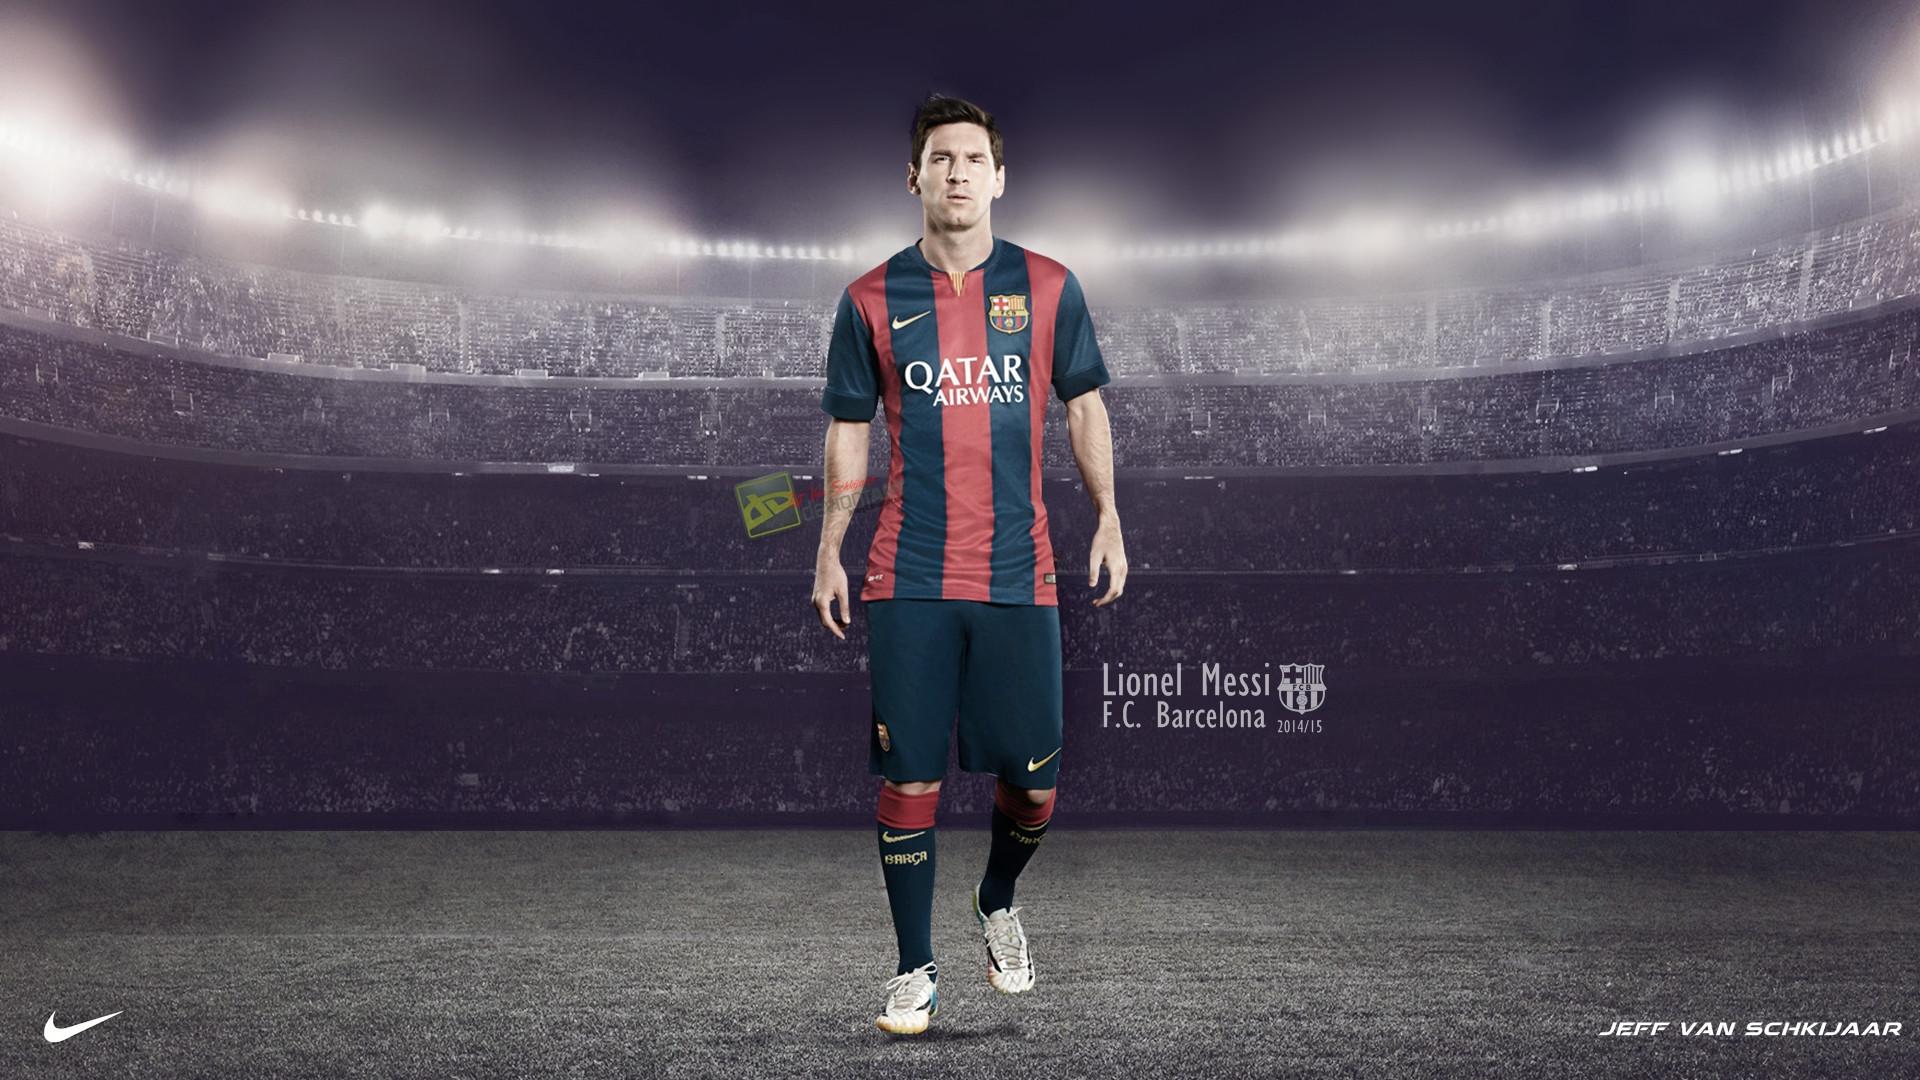 Lionel Messi 2016 Wallpaper, Top Lionel Messi 2016 HQ Picture